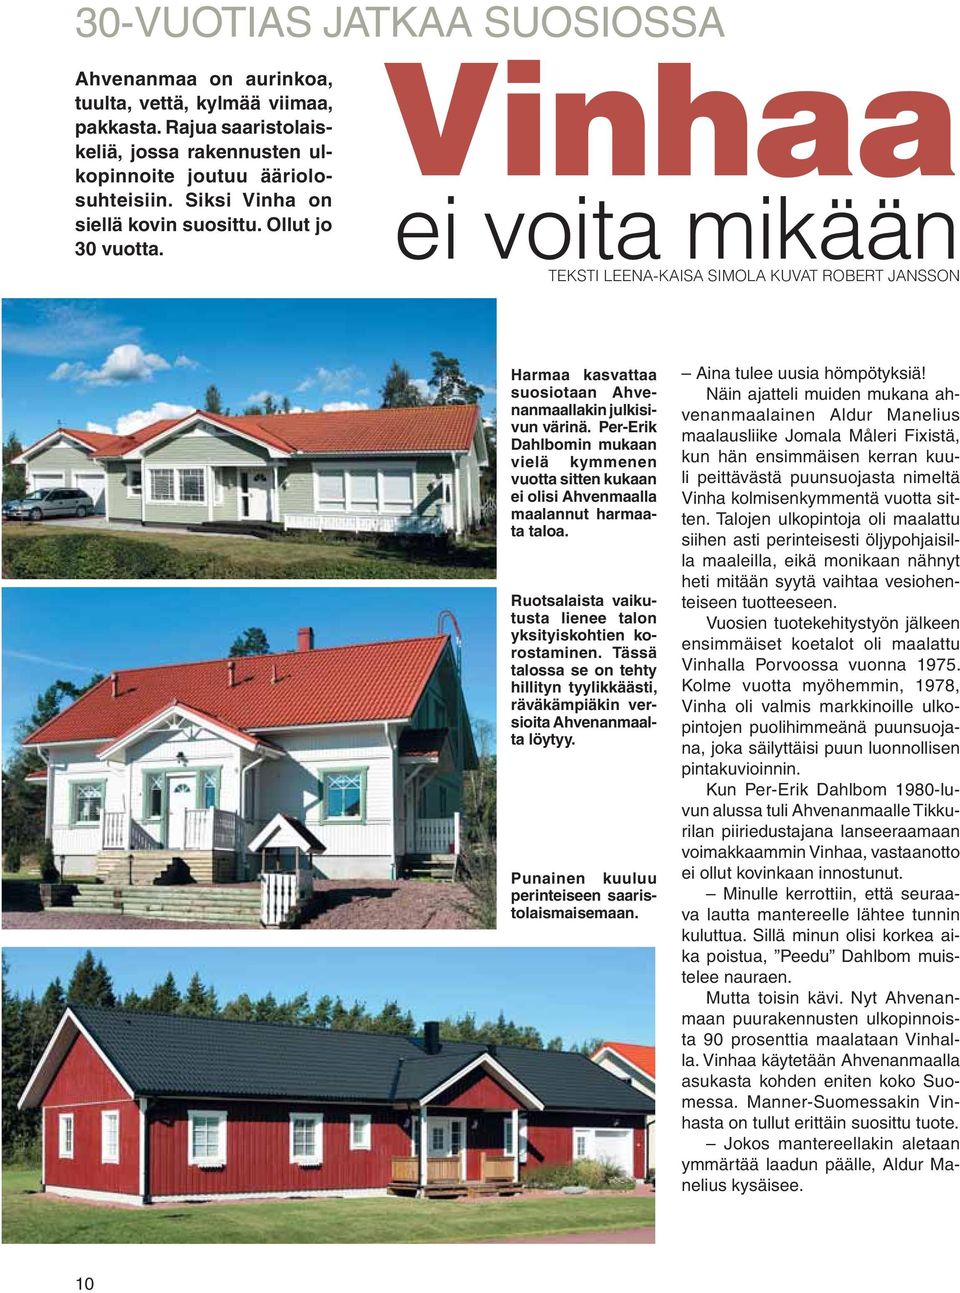 Per-Erik Dahlbomin mukaan vielä kymmenen vuotta sitten kukaan ei olisi Ahvenmaalla maalannut harmaata taloa. Ruotsalaista vaikutusta lienee talon yksityiskohtien korostaminen.